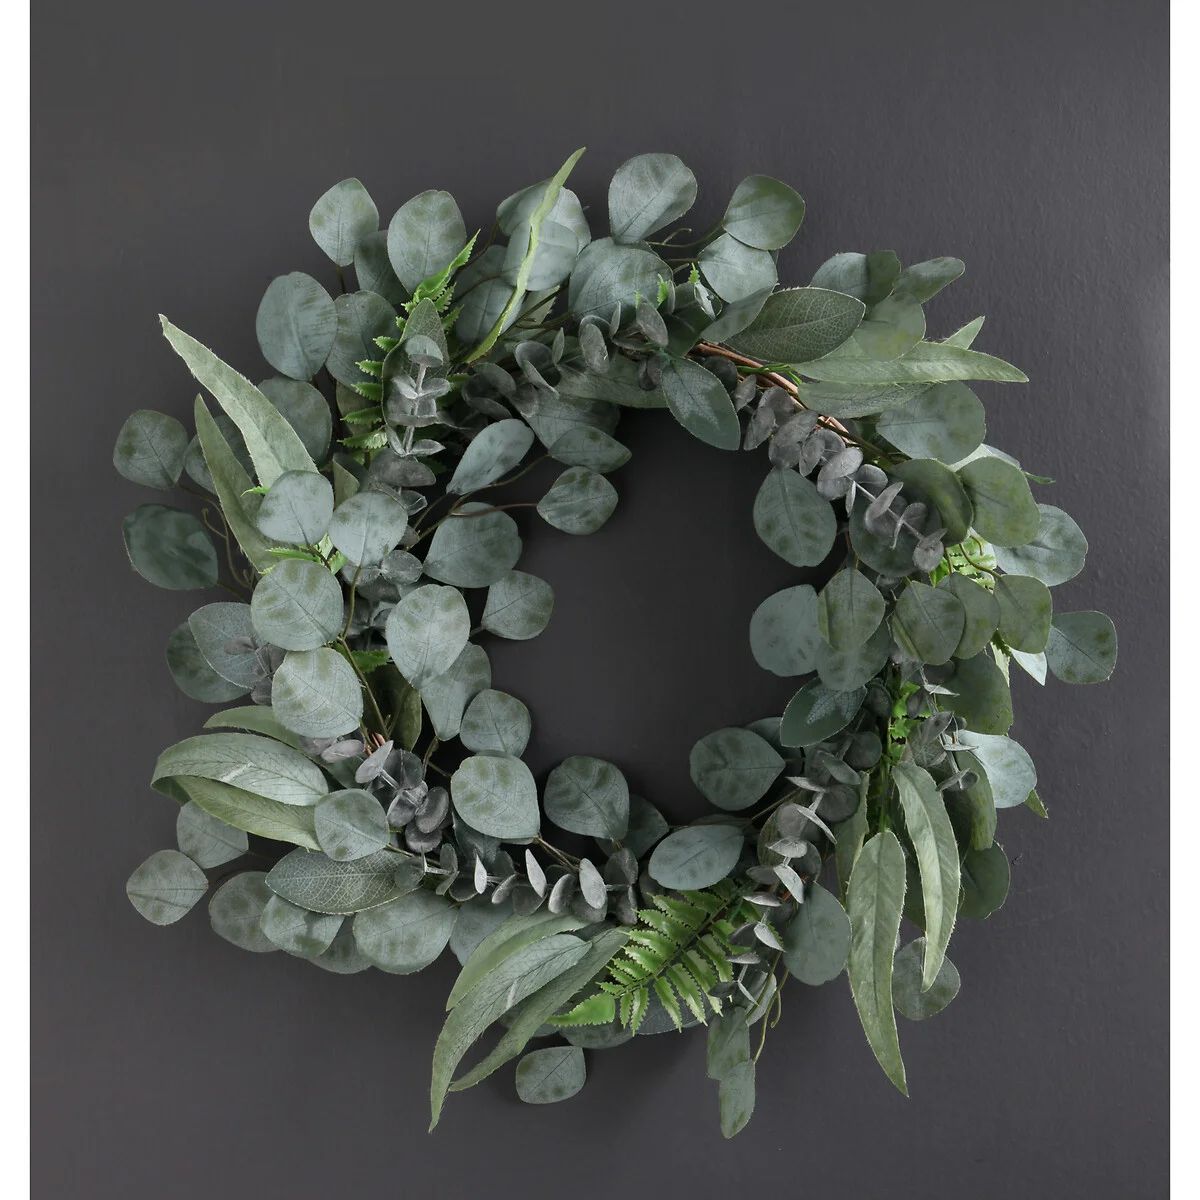 50cm Artificial Eucalyptus Wreath | La Redoute (UK)